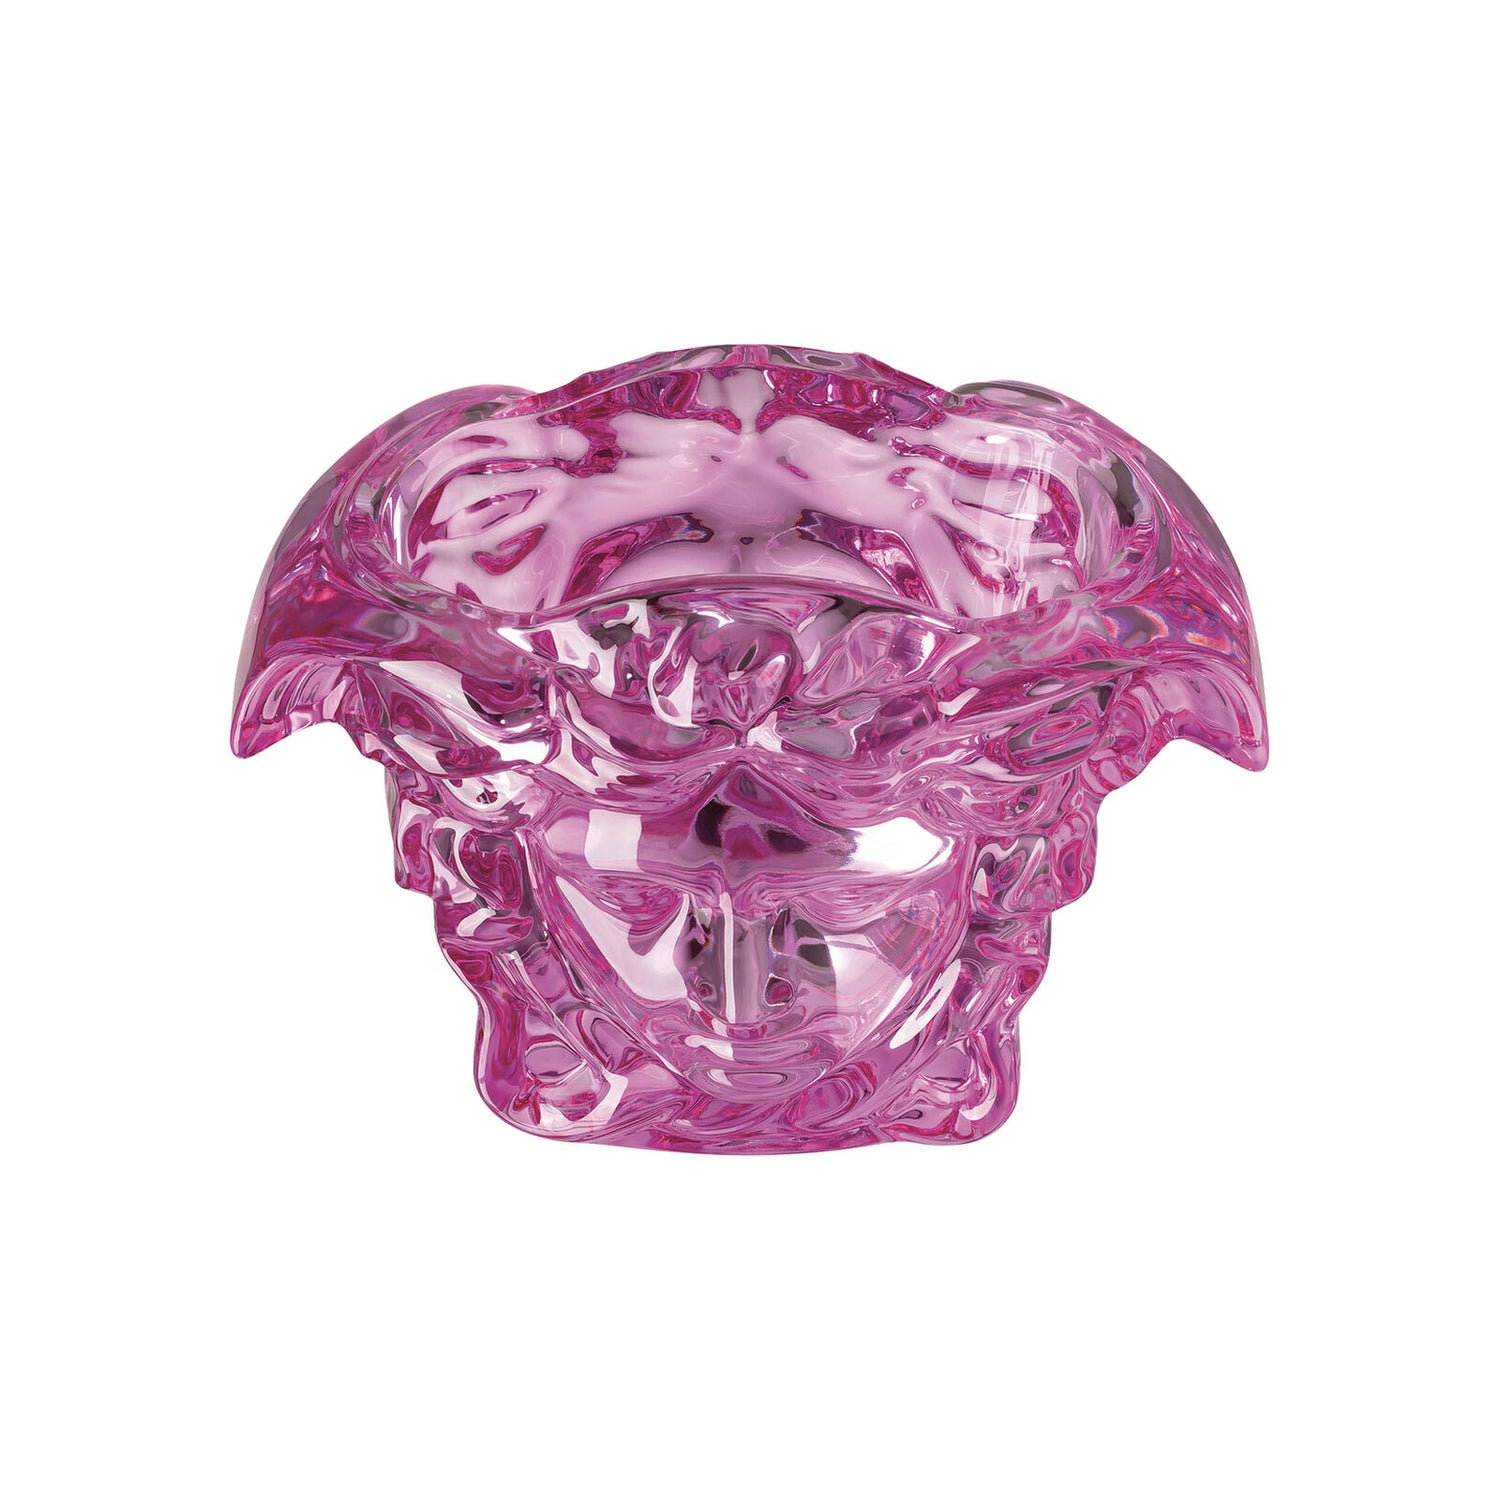 Medusa Grande Crystal  Pink Vase  19 CM, 7 1/2 Inch